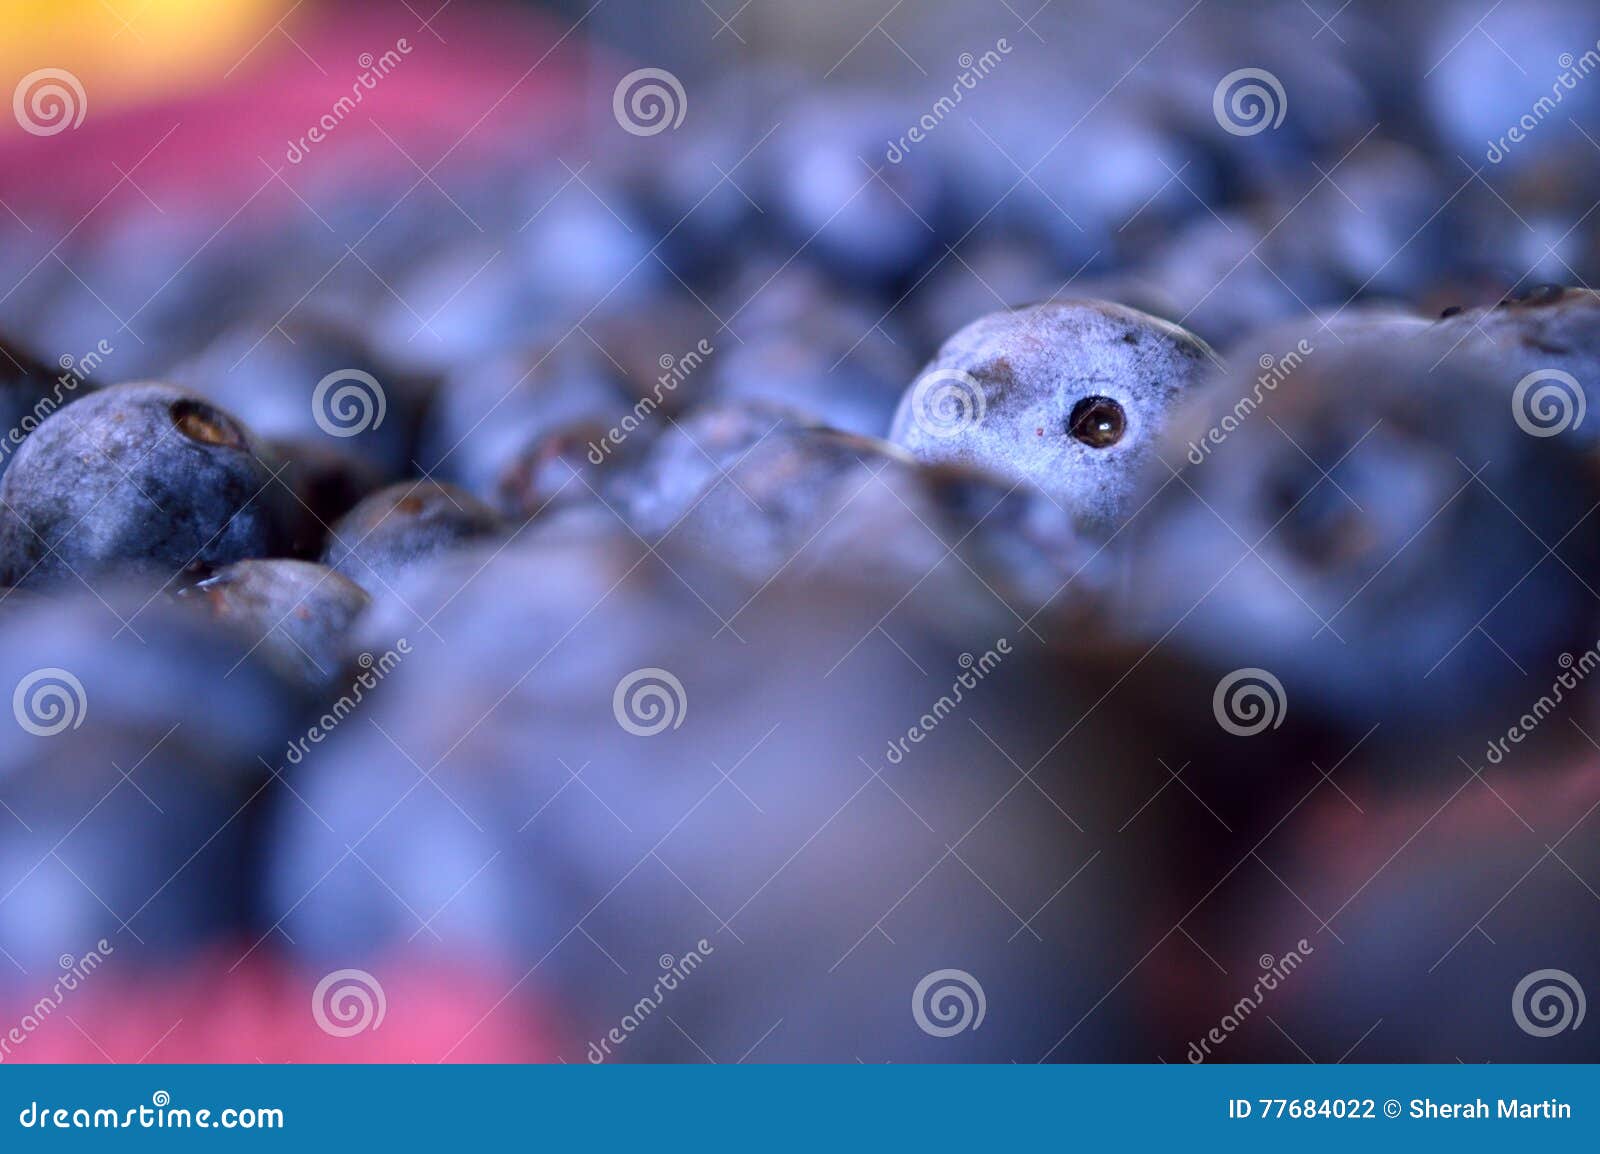 Одна уединённая голубика засовывая свою голову вверх в море голубики такие же. Абстрактное фото голубики с короткой глубиной поля Запачканные голубики в переднем плане и предпосылке Пинк и желтый цвет потехи горячий в углах